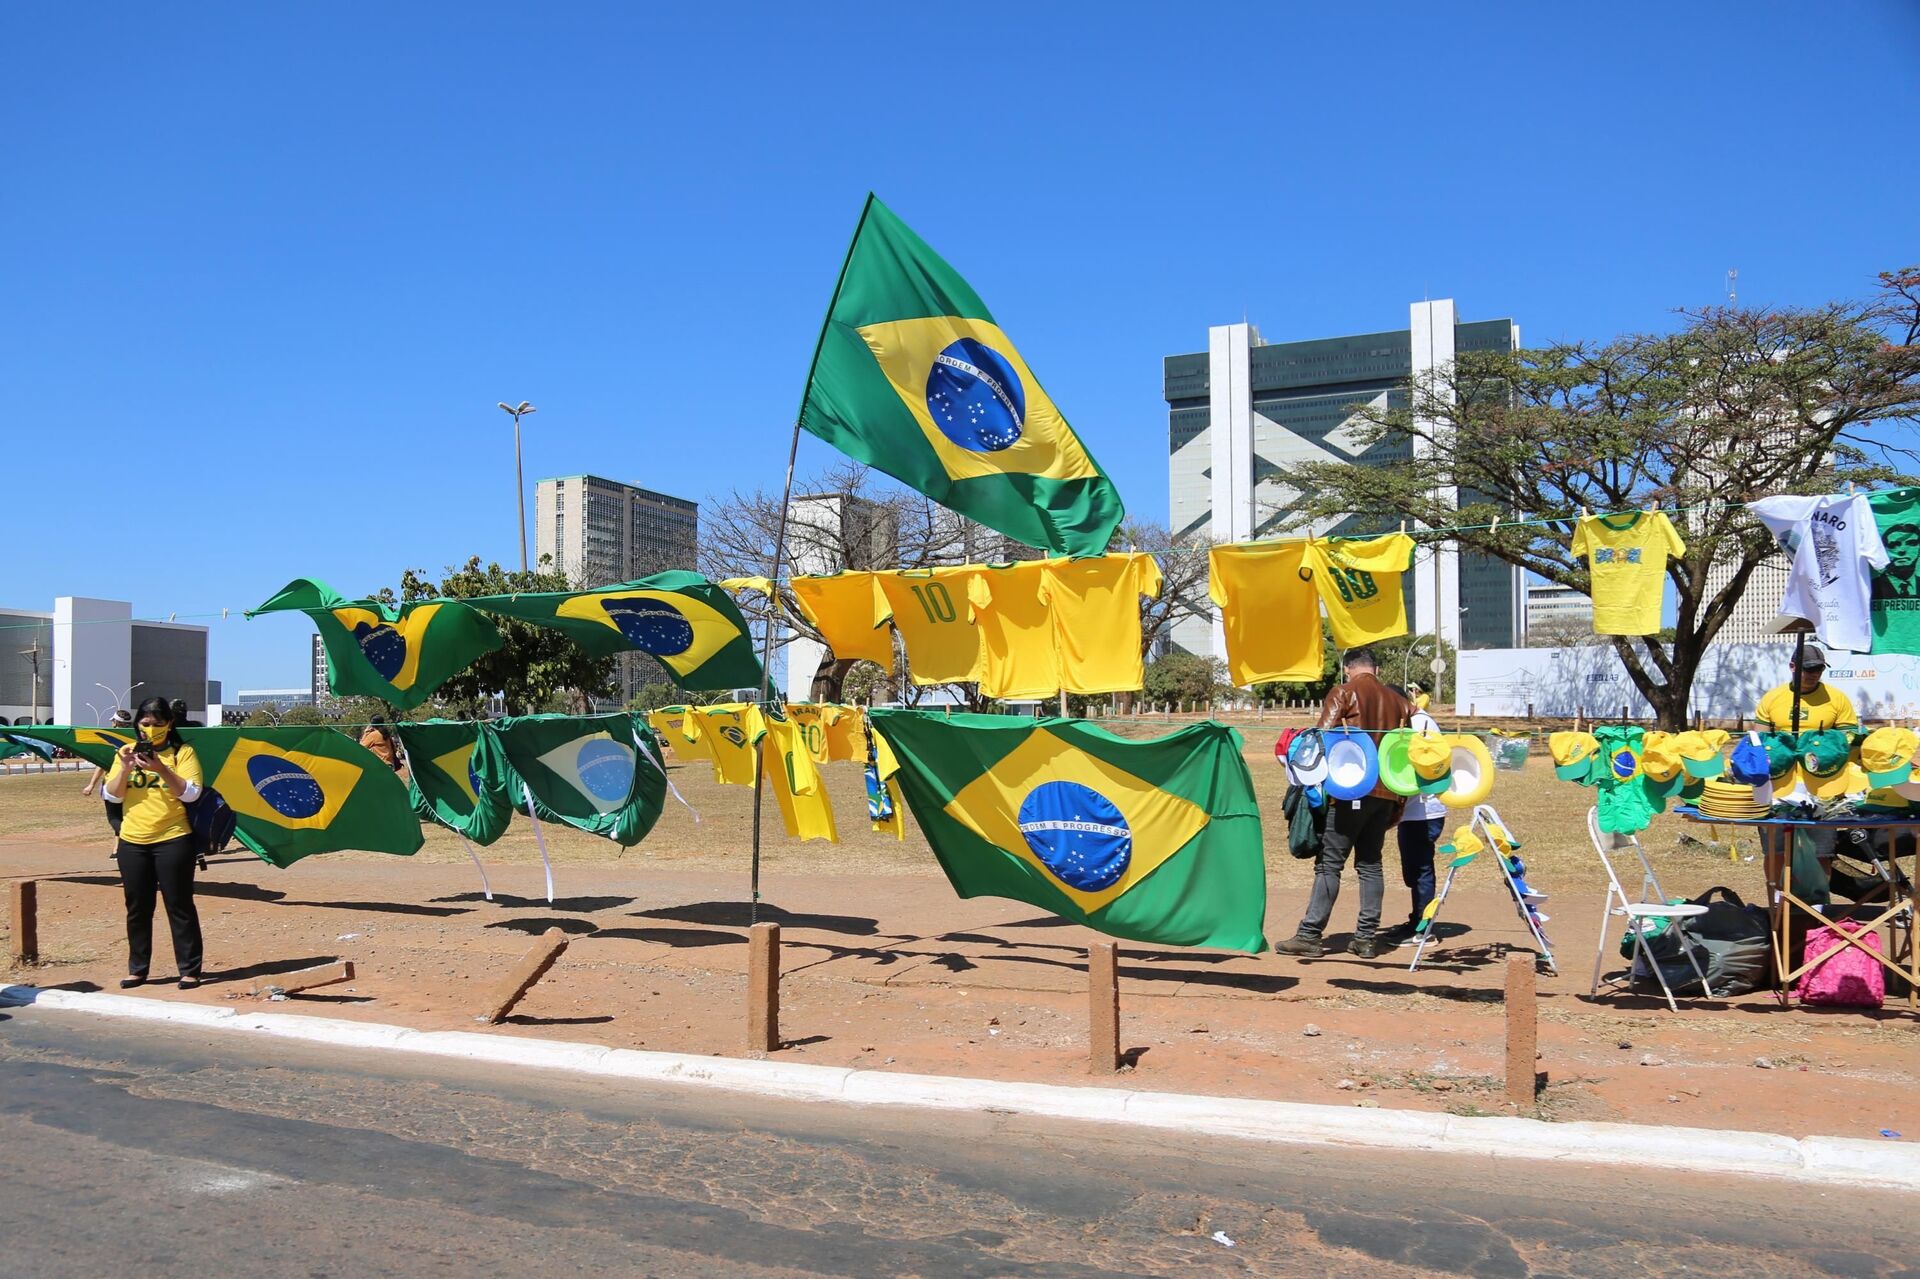 Capitais brasileiras têm atos pró-Bolsonaro e a favor do voto impresso (FOTOS) - Sputnik Brasil, 1920, 01.08.2021